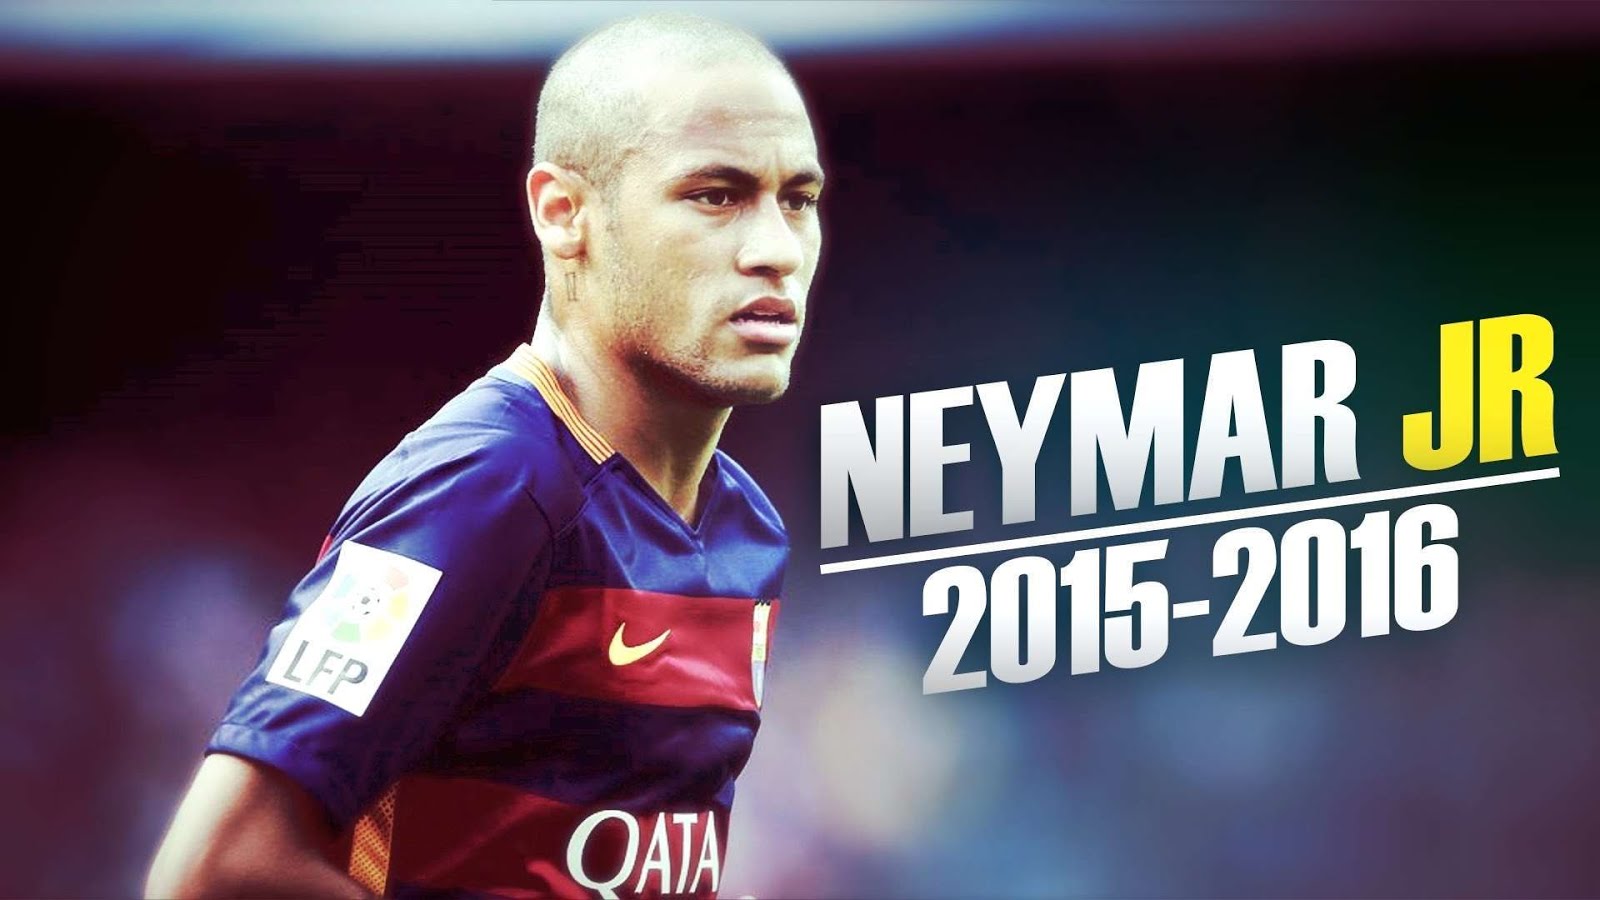 Neymar Wallpapers Collection - Poze Cu Neymar Download - 1600x900 Wallpaper  